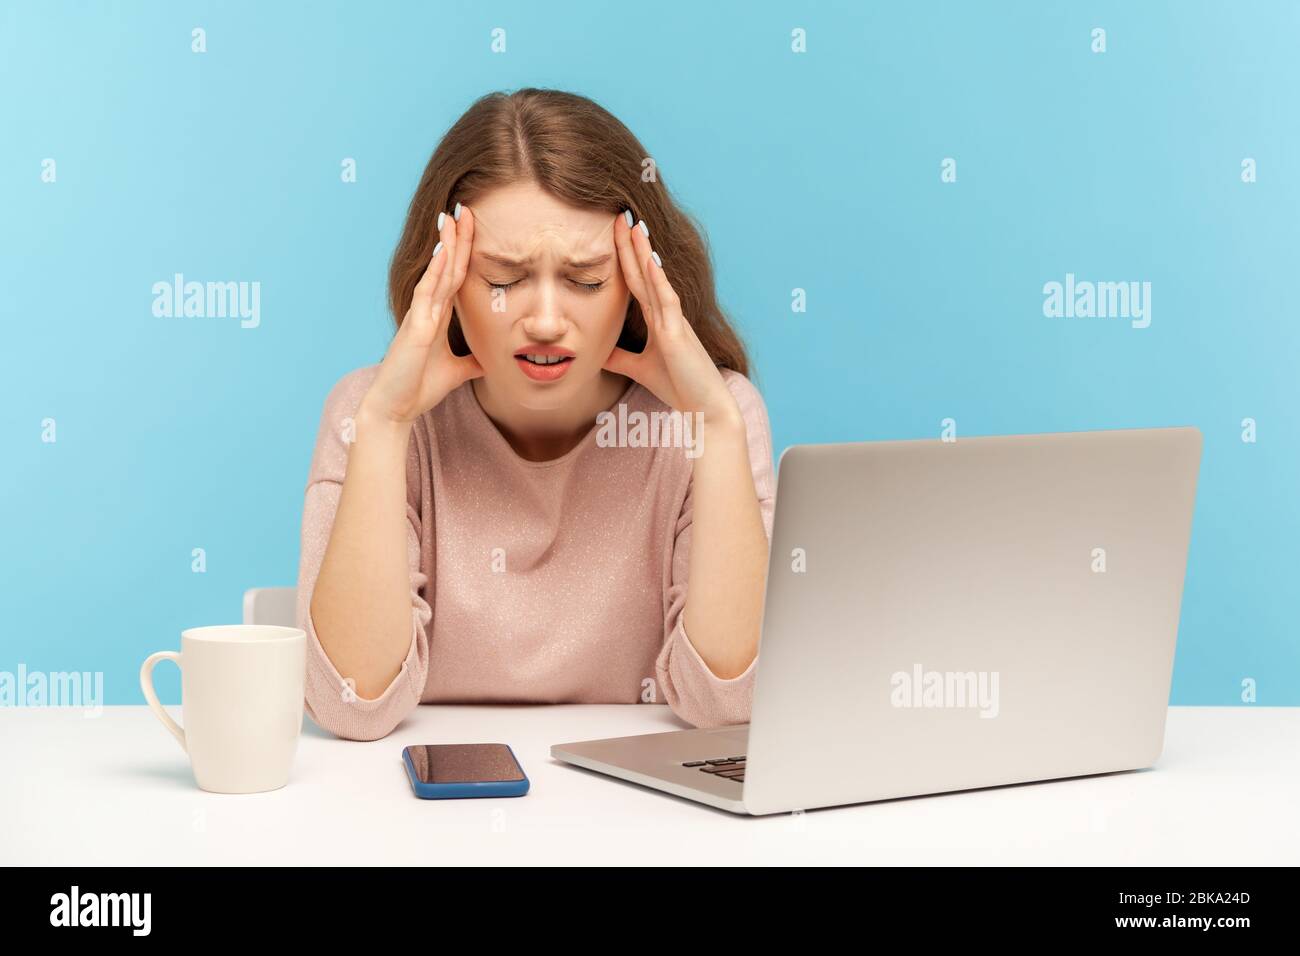 Frustrierte müde junge Frau Mitarbeiterin sitzt am Arbeitsplatz mit Laptop und schmerzhaften Kopf, leiden intensive Migräne, Überarbeit und stressigen jo Stockfoto